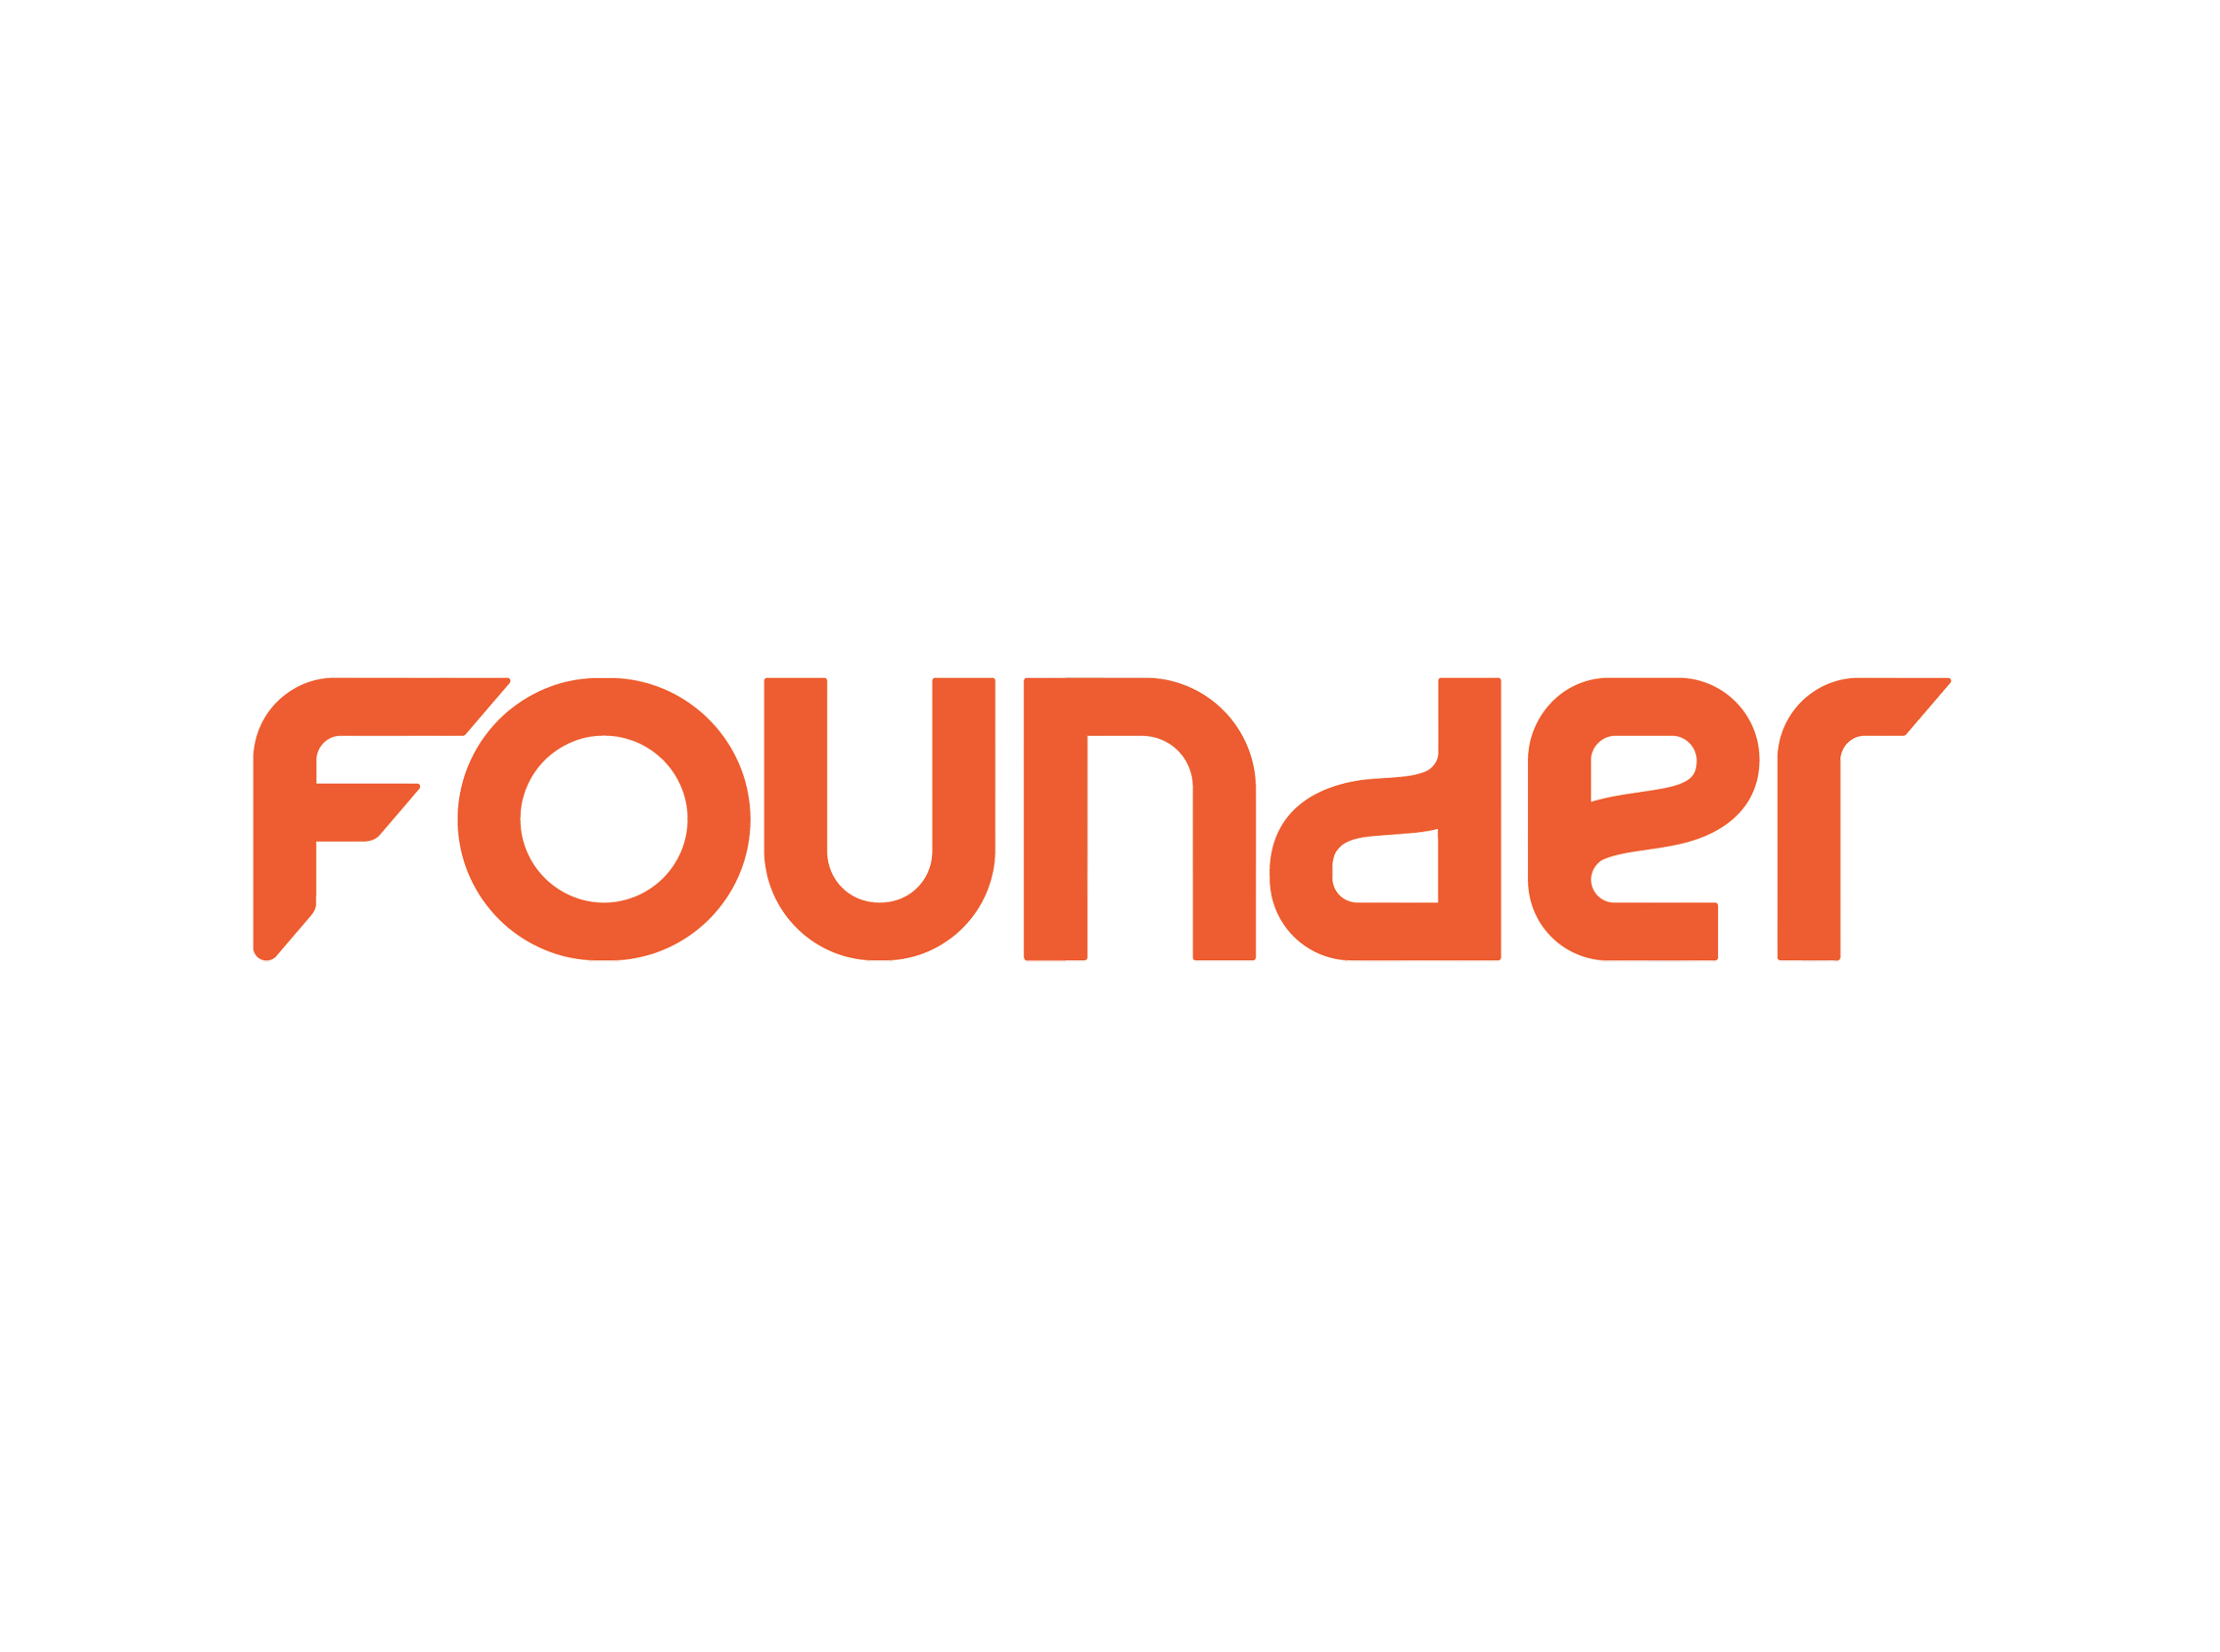 Founder là gì và tầm quan trọng Founder trong doanh nghiệp?